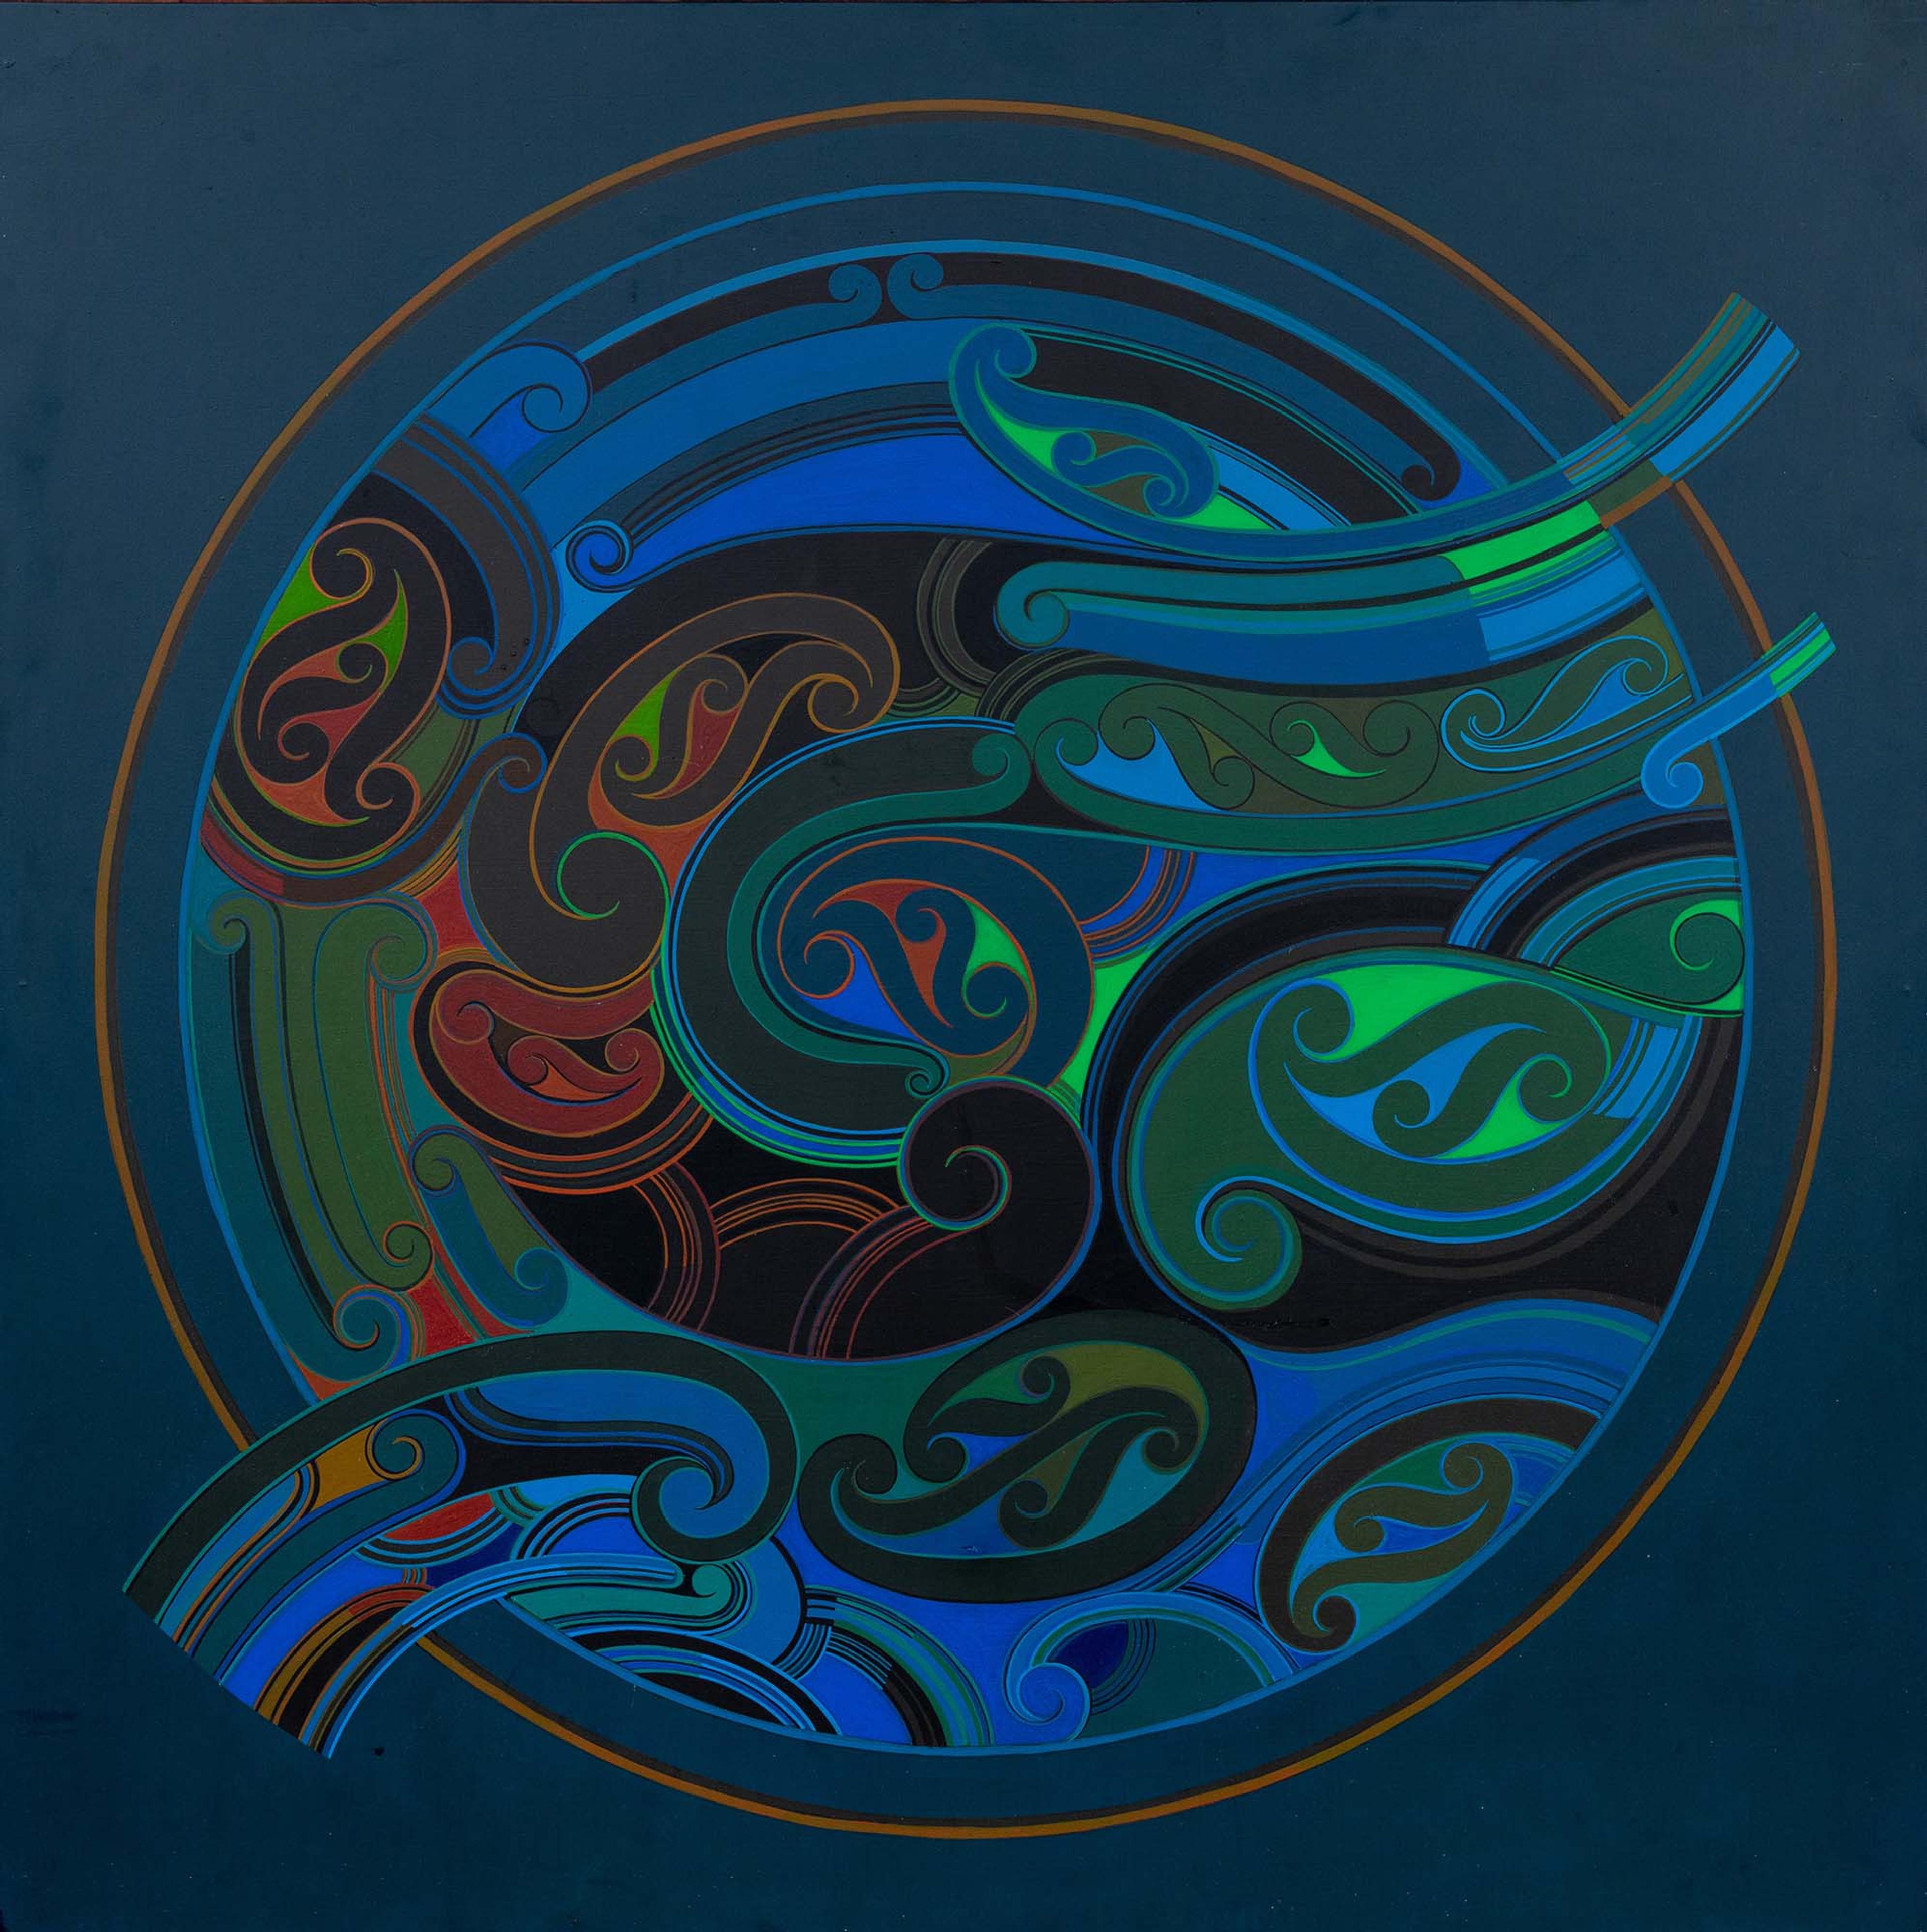 Et abstrakt maleri med snirklede former i ulike farger som går i sirkel.